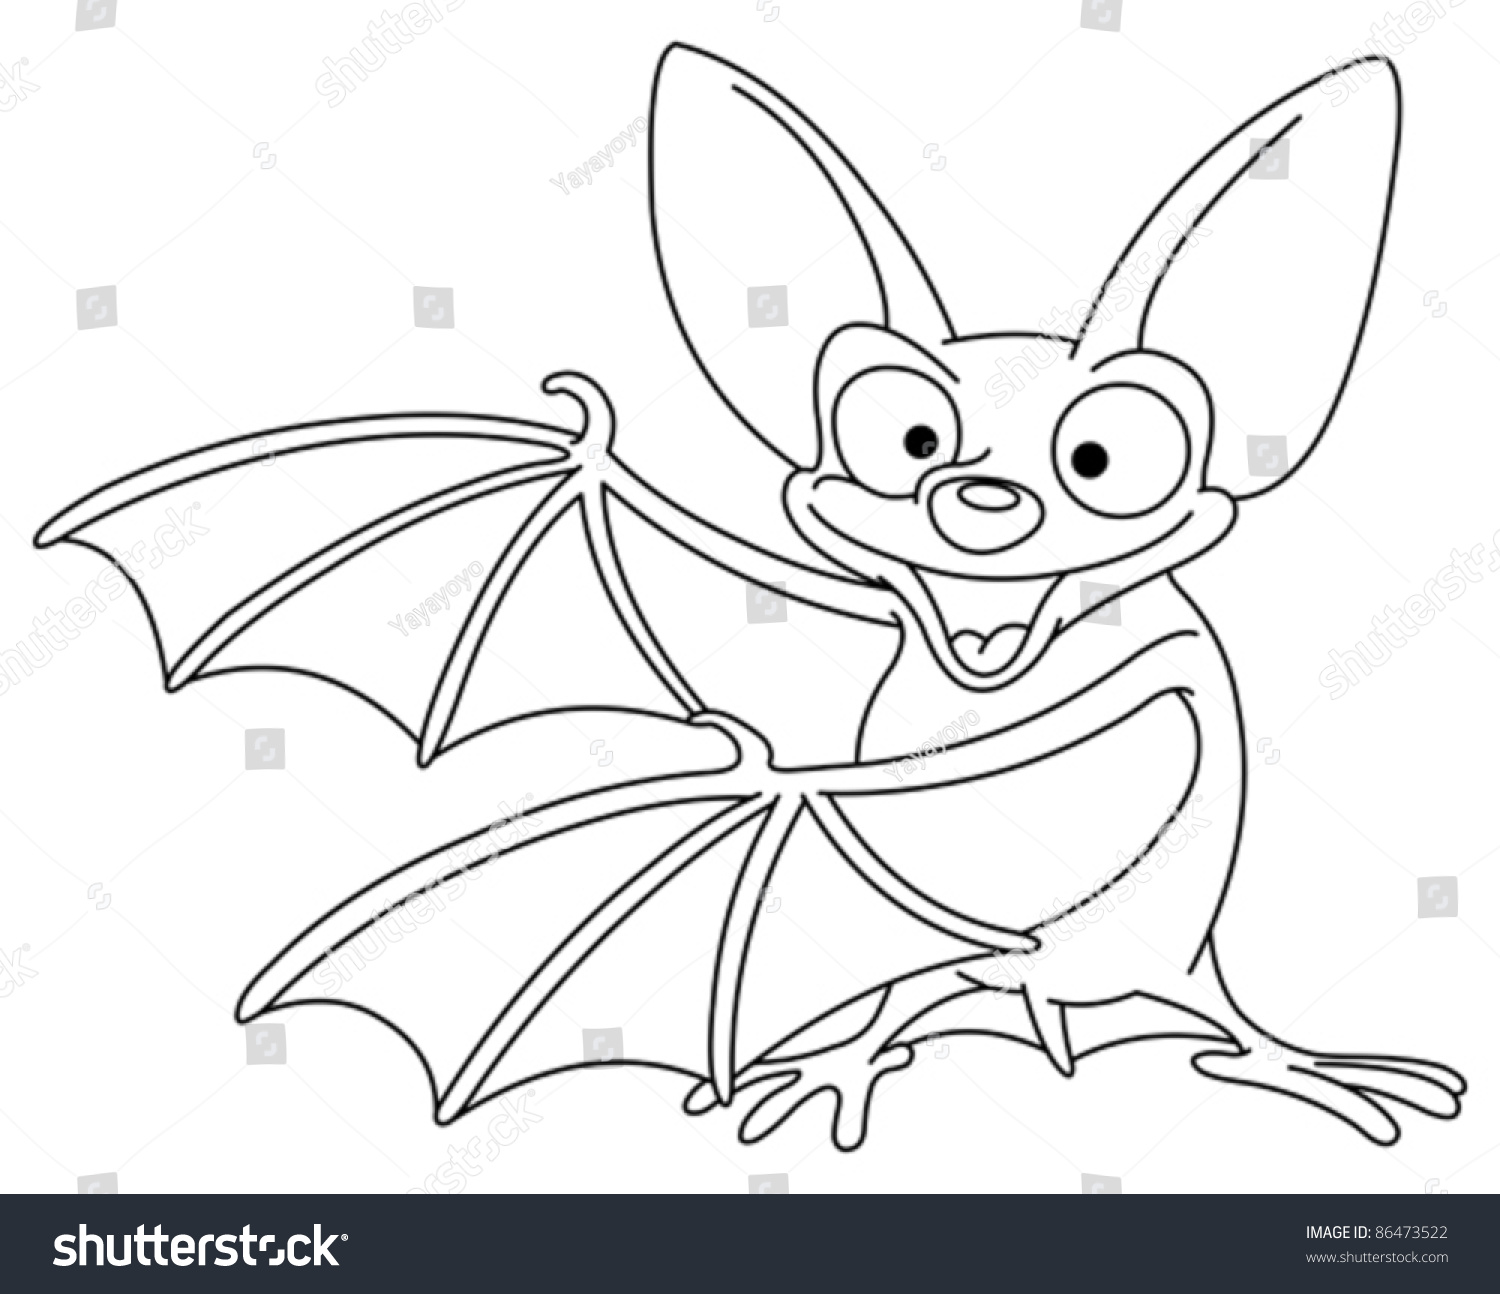 Outlined Bat Stock Vector Illustration 86473522 : Shutterstock